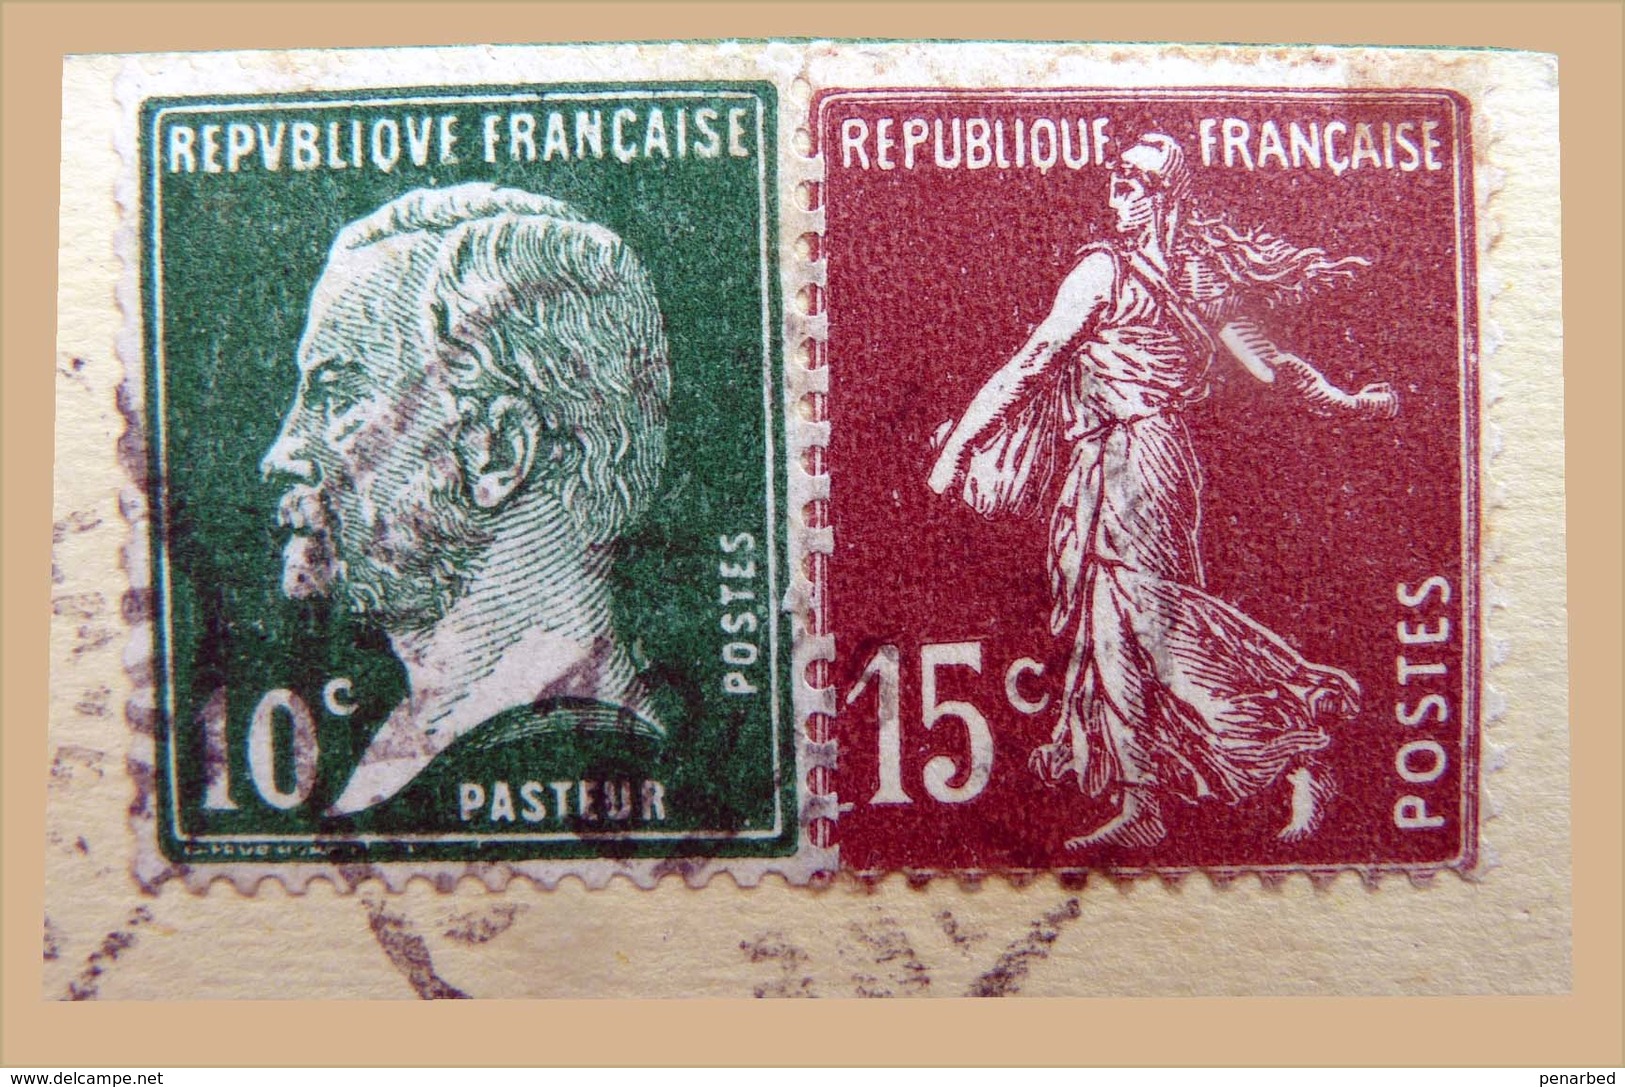 roulette sur 21 plis ( 1 enveloppe et 20 cartes postales )  Semeuse et Pasteur / carte Samaritaine Bon Marché et autres